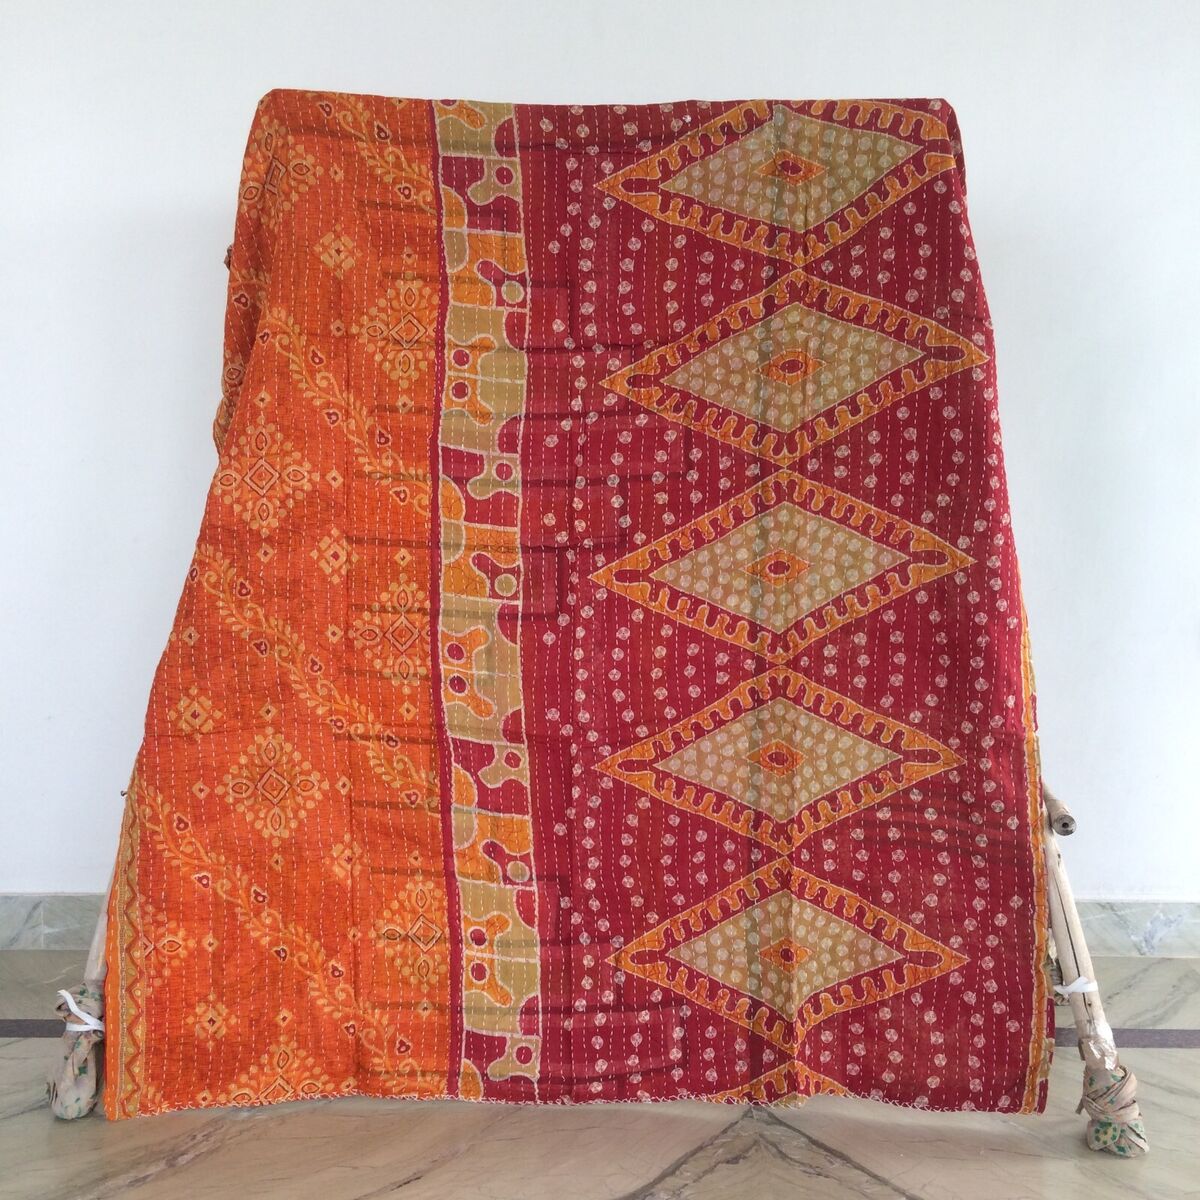 Vintage Embroidered Kantha Blanket